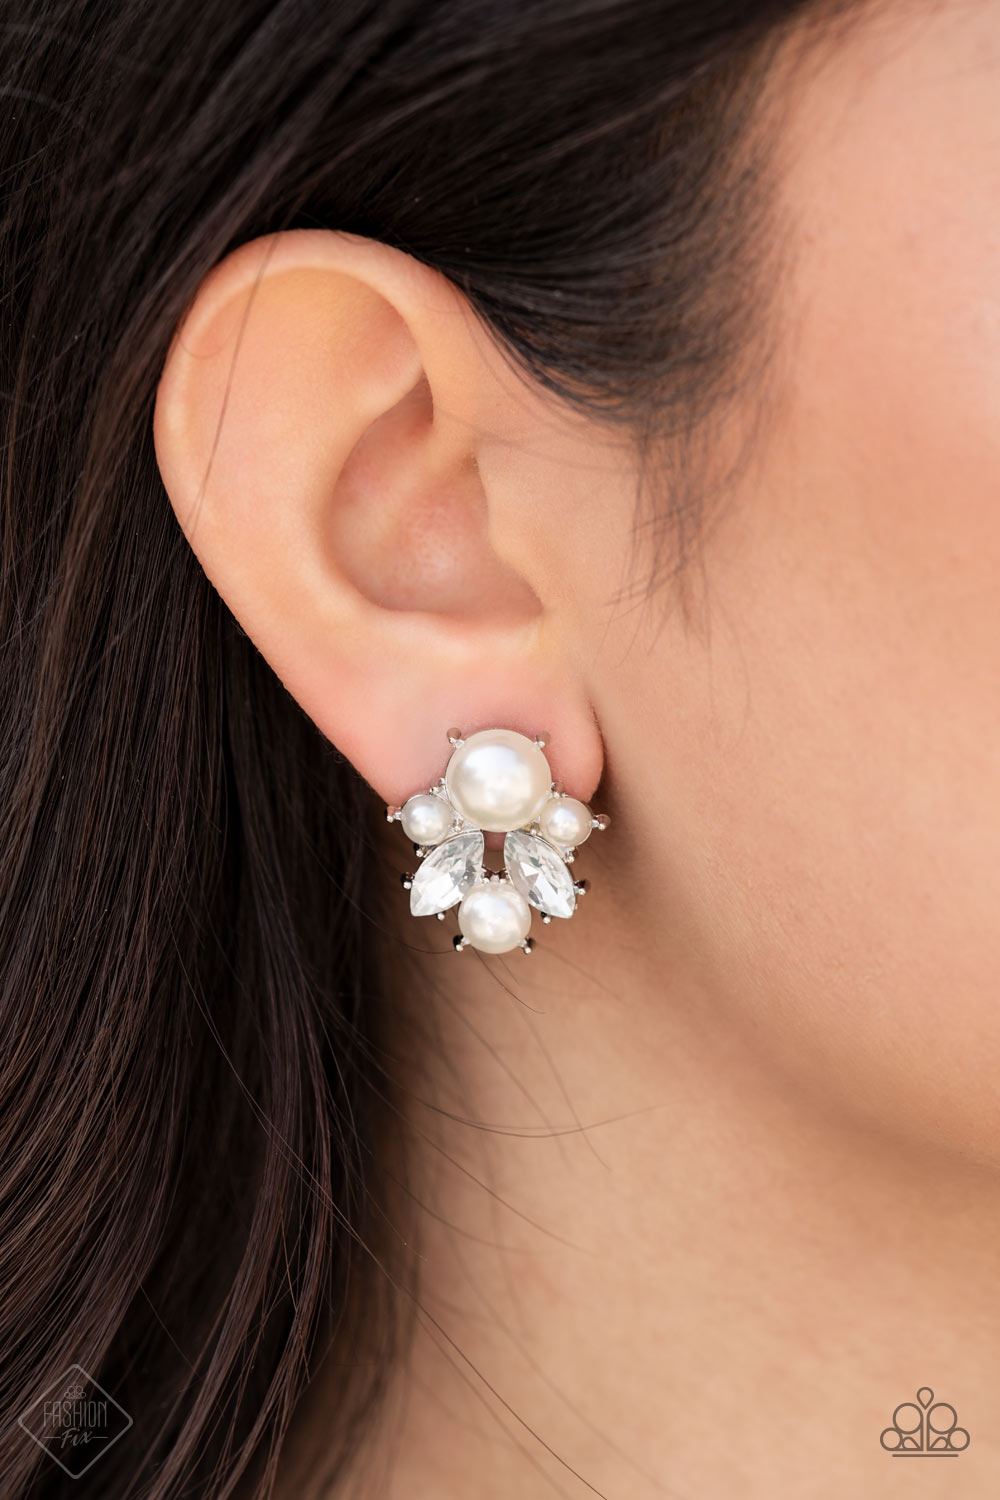 Royal Reverie Earring (Gold, White)